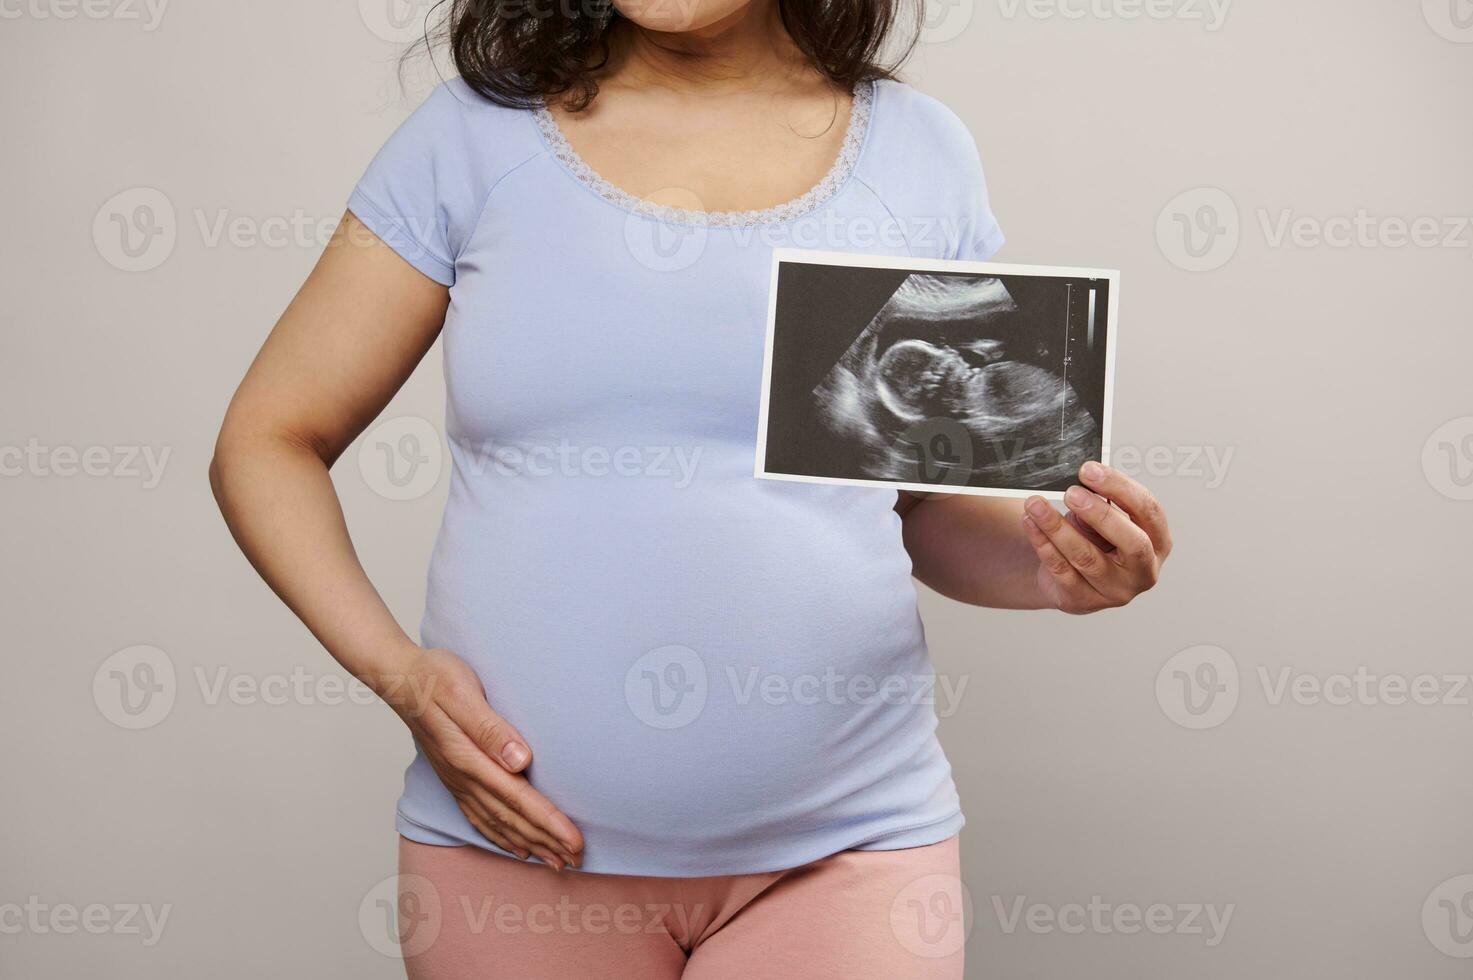 beskurna se gravid kvinna smeksam henne mage, som visar på kamera de nyfödd bebis ultraljud skanna över vit bakgrund foto